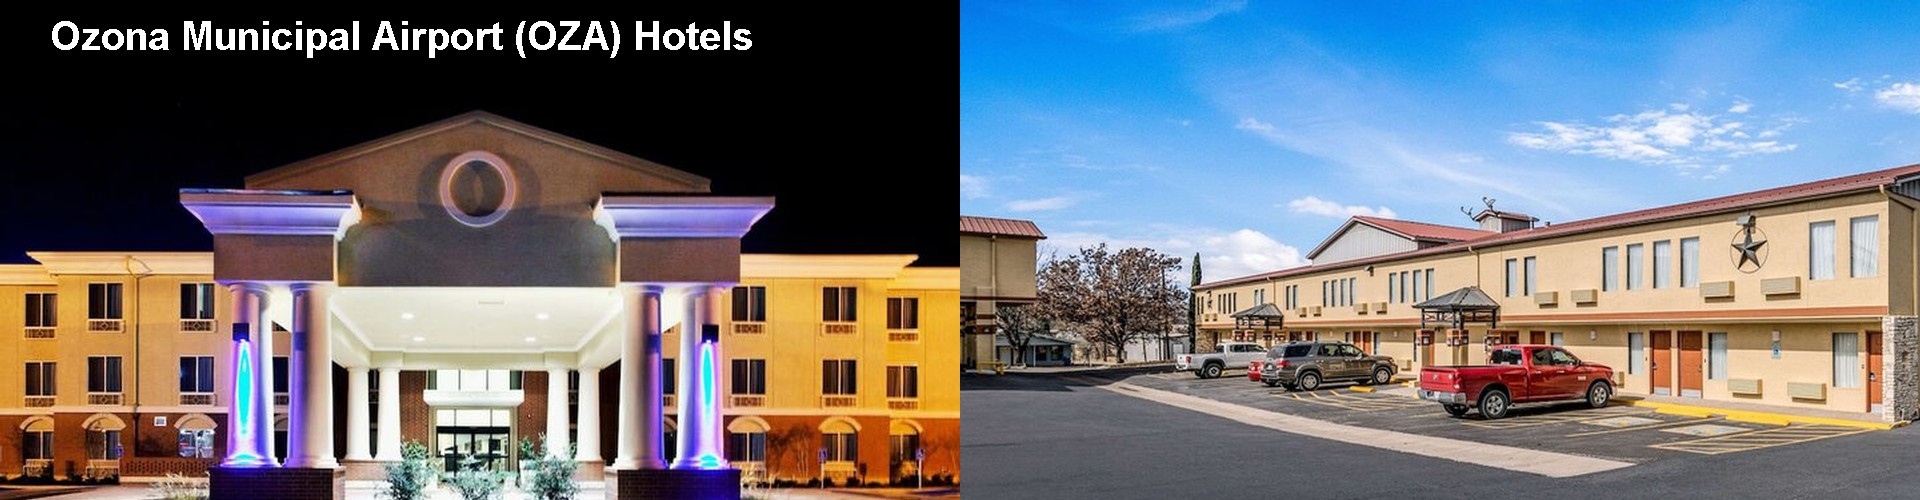 4 Best Hotels near Ozona Municipal Airport (OZA)